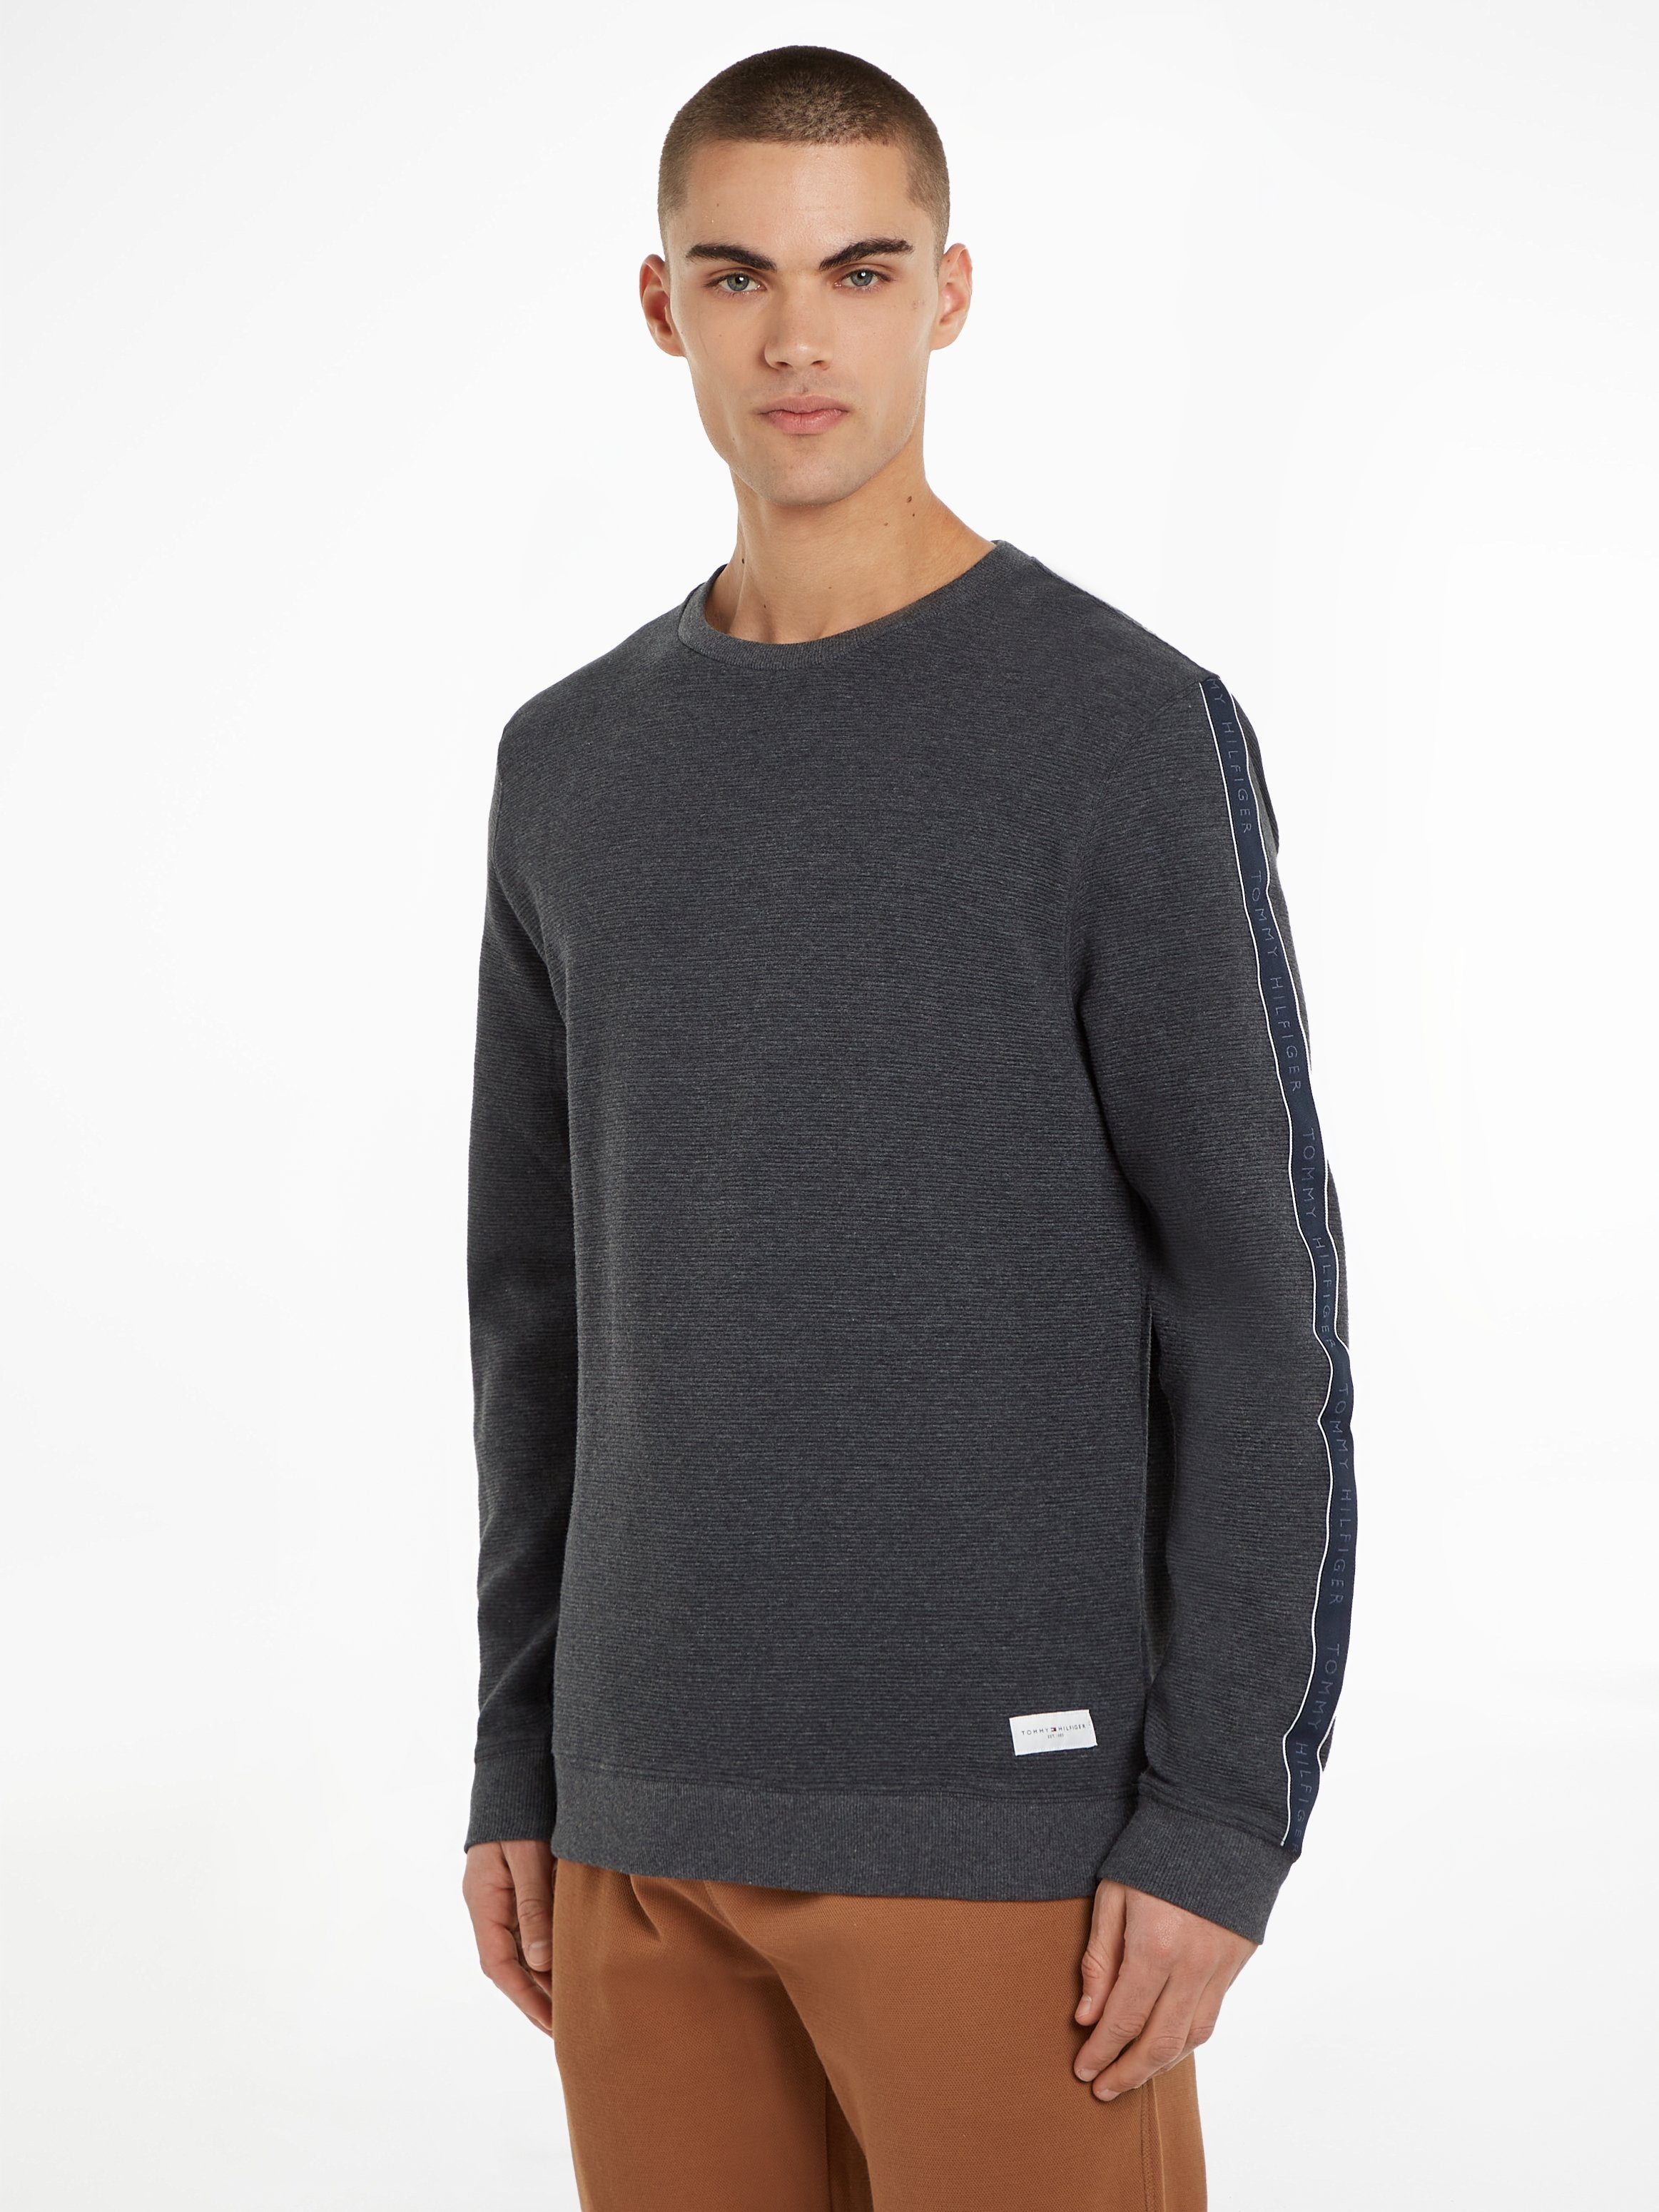 Tommy Hilfiger Underwear Sweater HWK TRACK TOP mit Markenlabel an den Ärmeln dark grey